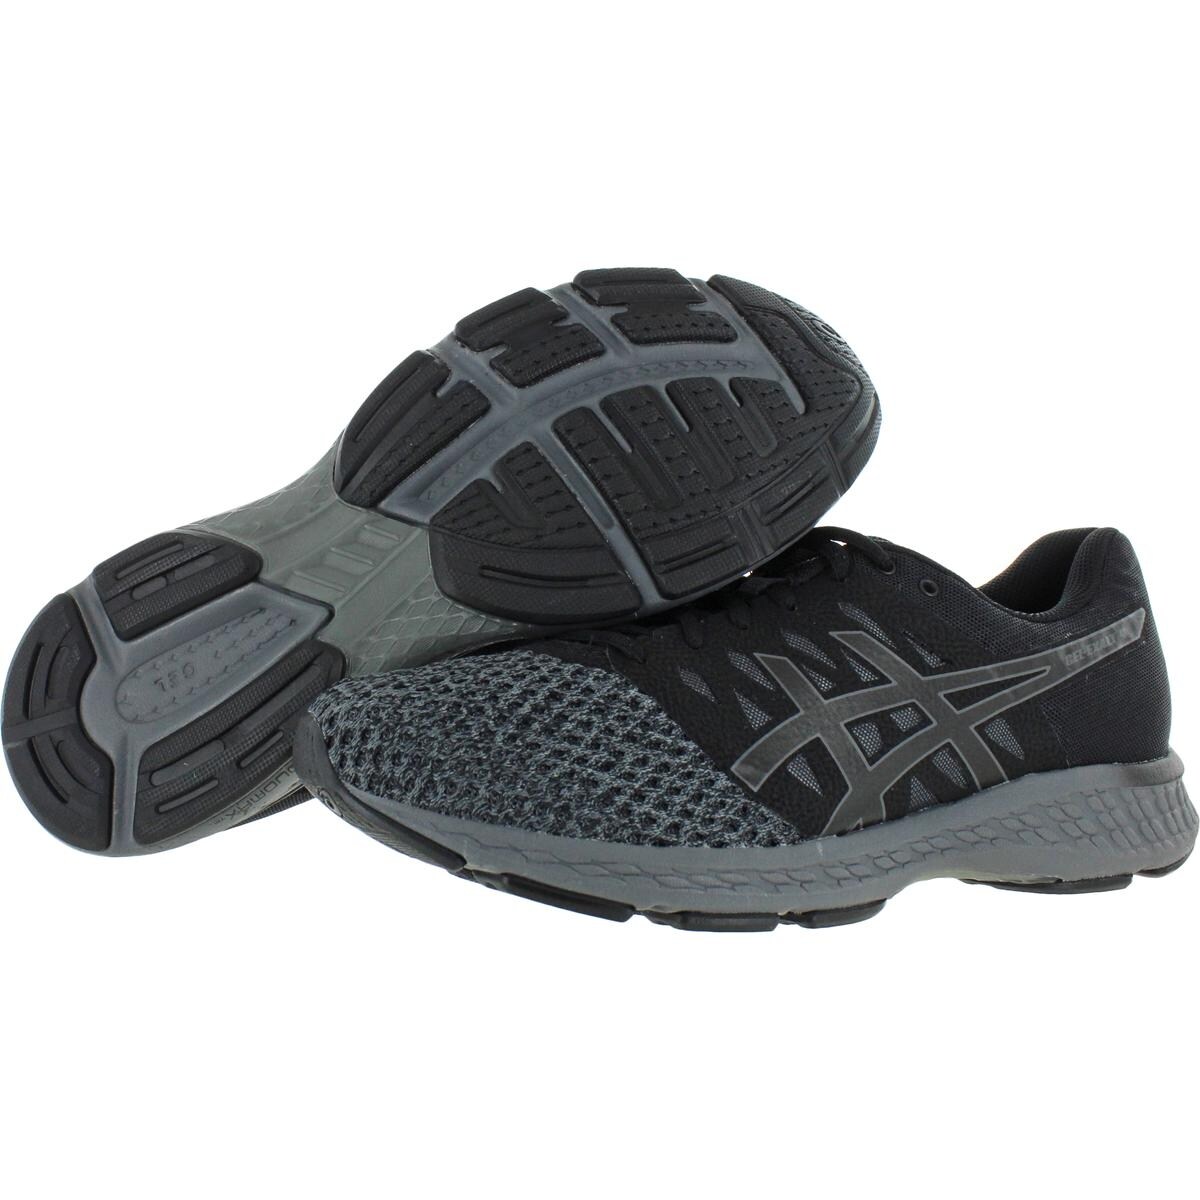 asics men's gel exalt 4 running shoes